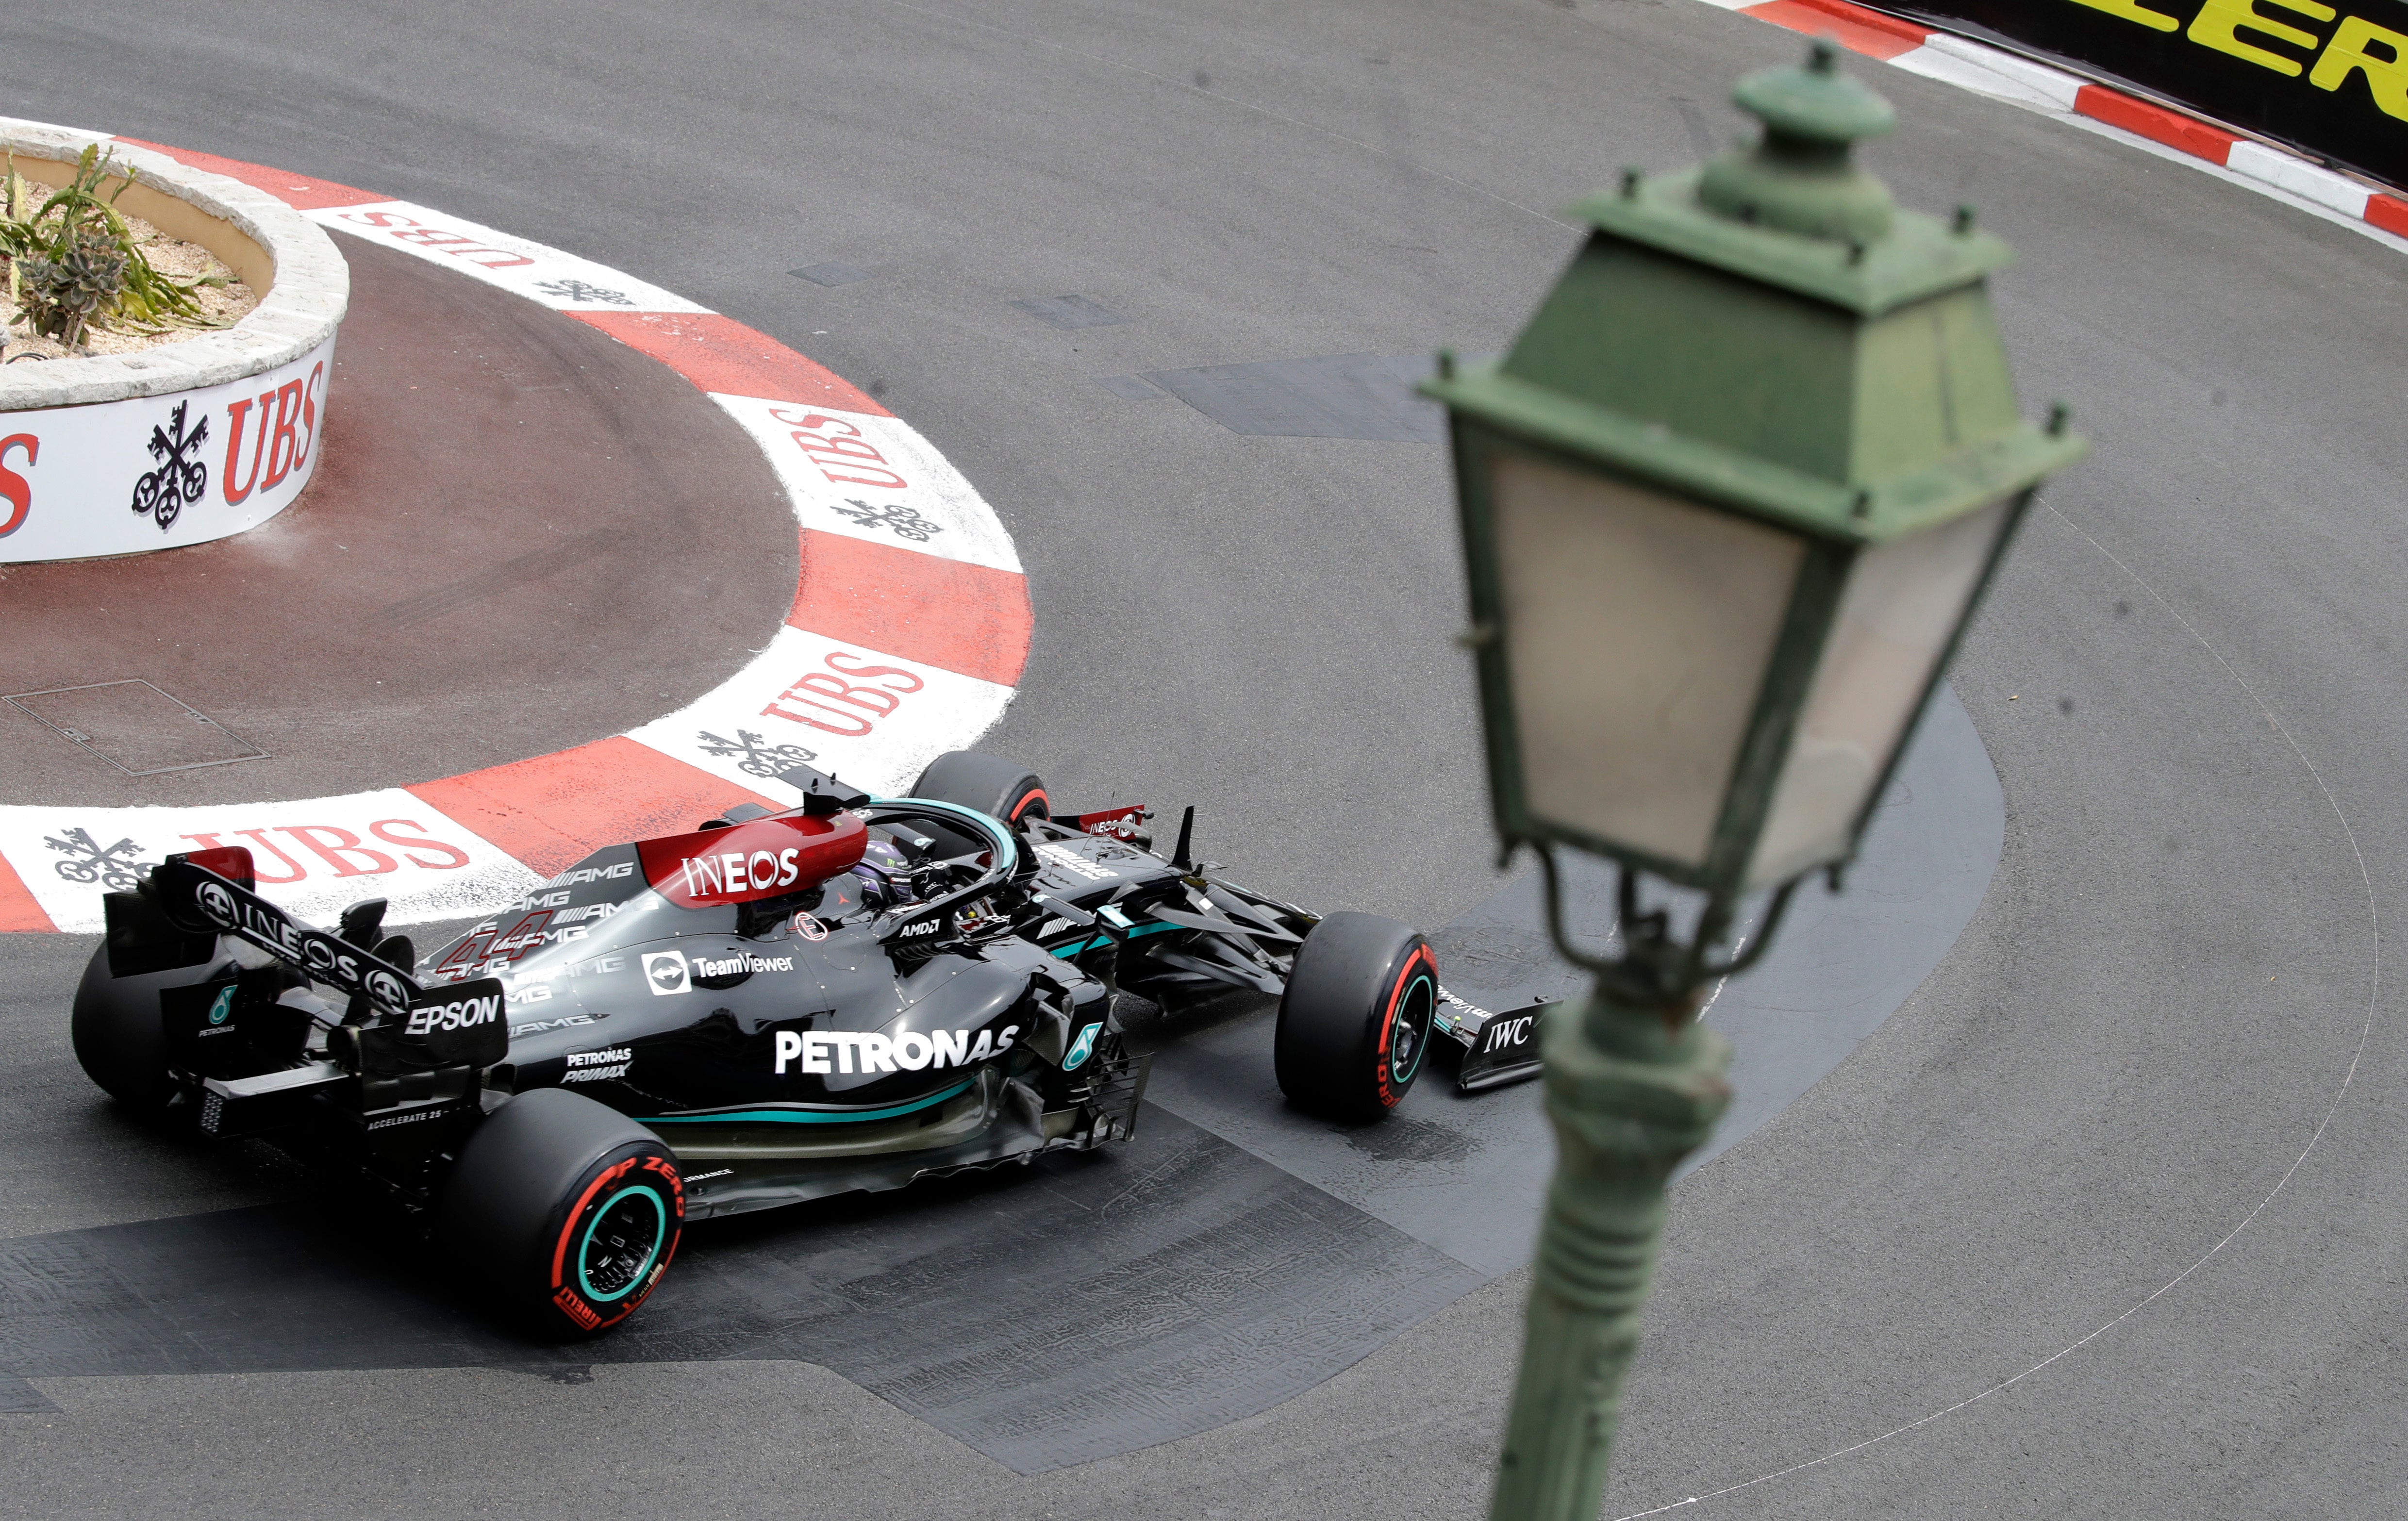 Lewis Hamilton struggled throughout qualifying